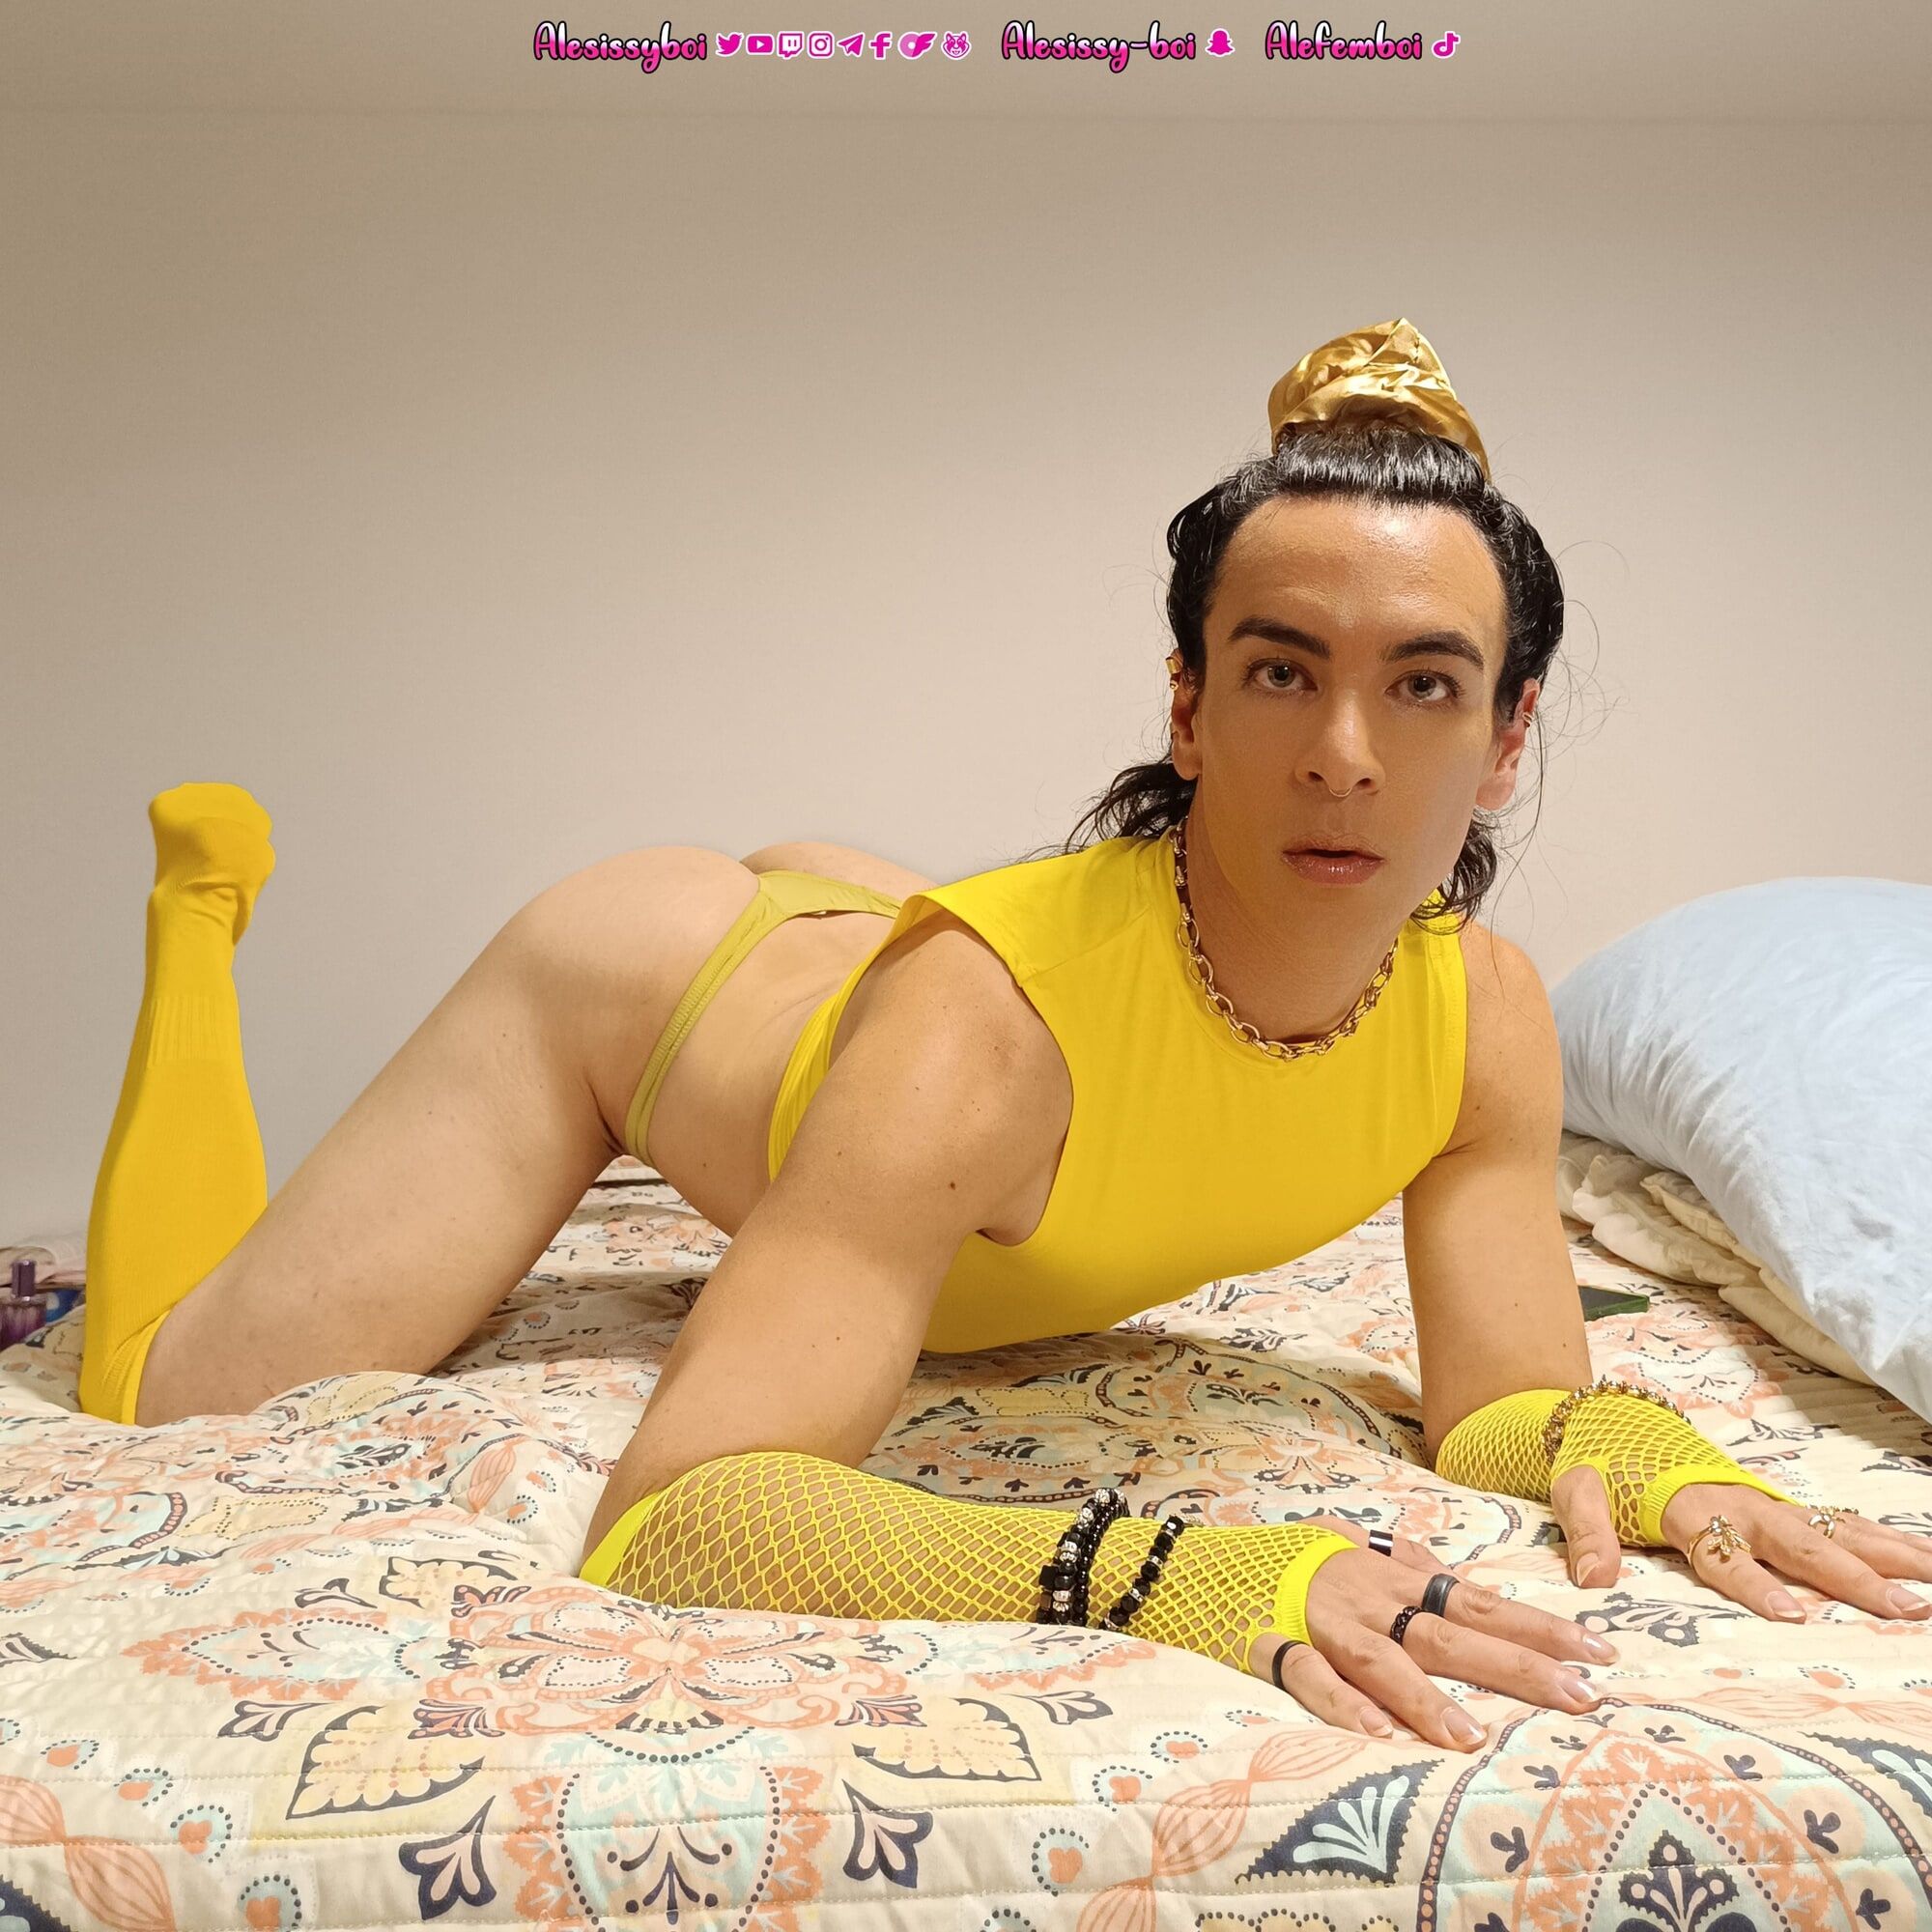 Sissyboi femboi  Yellow lingerie outfit #8